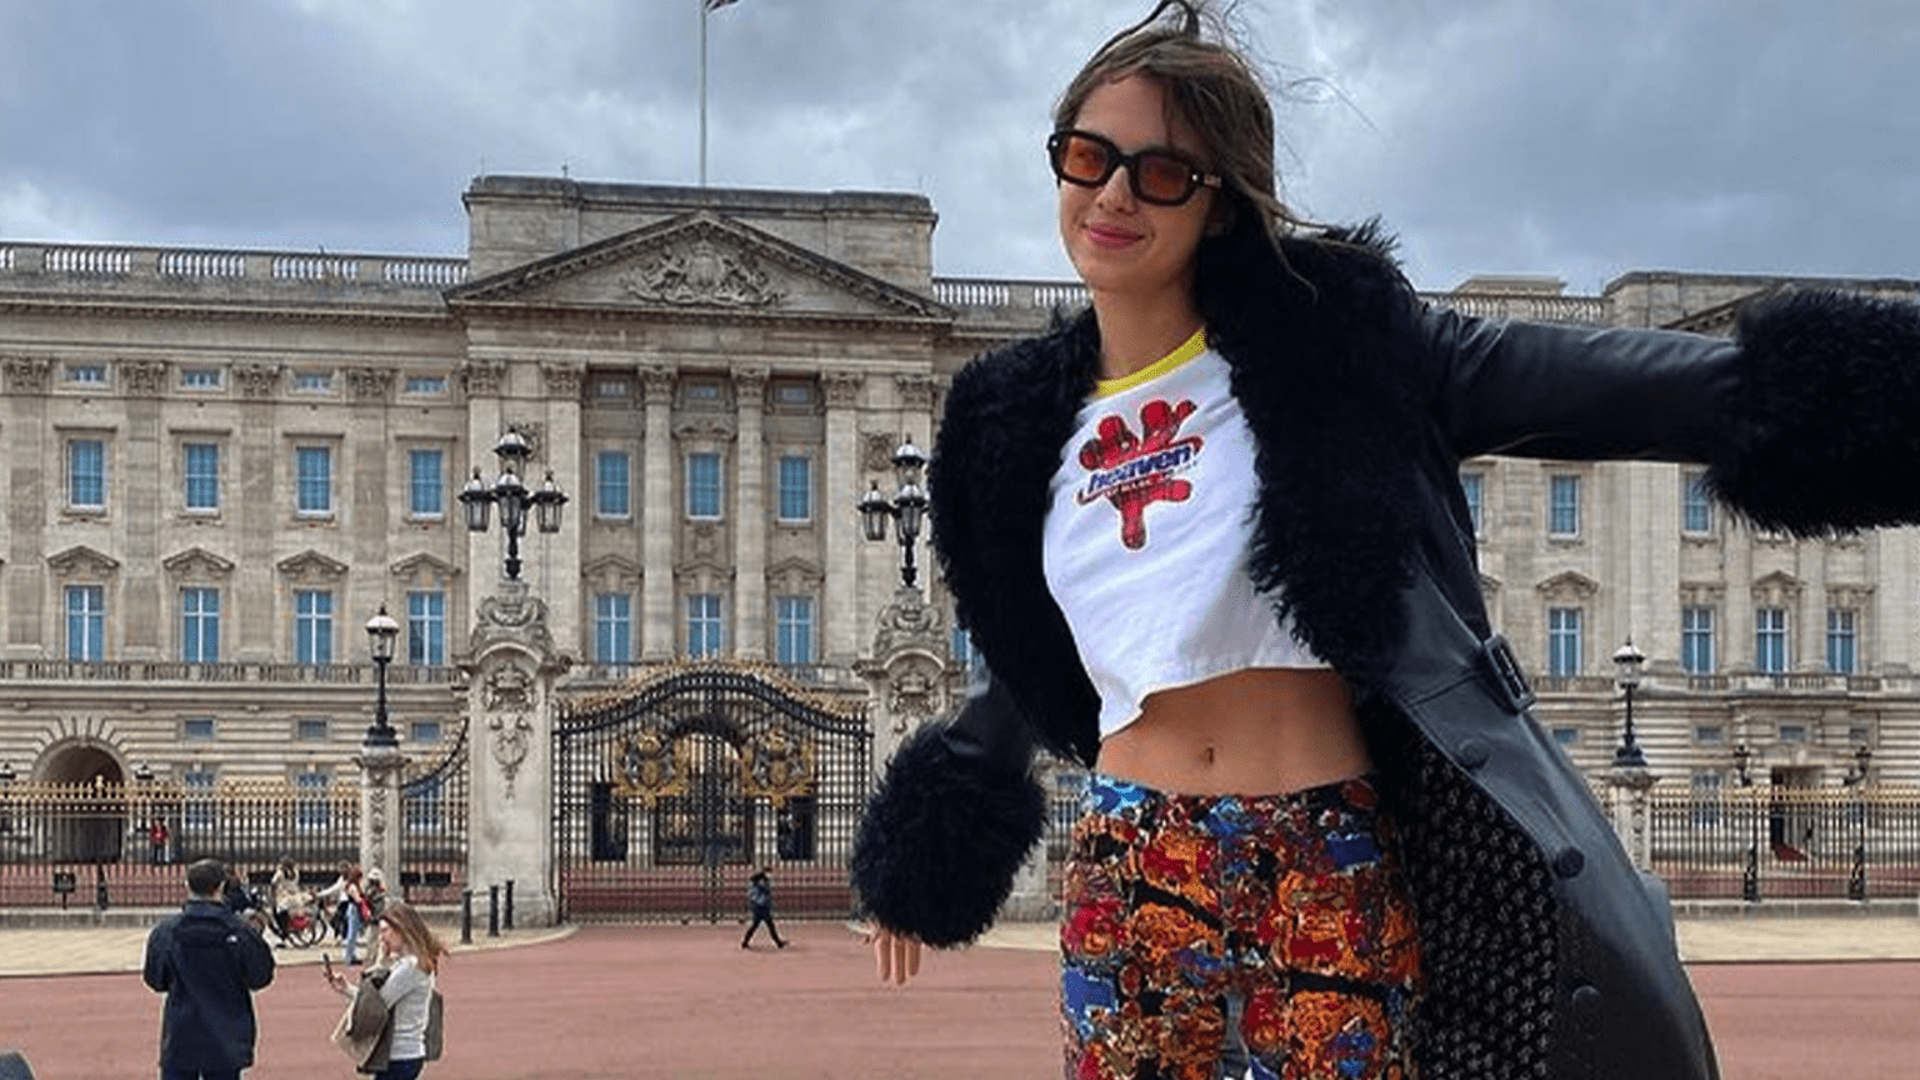 Olivia outside Buckingham palace